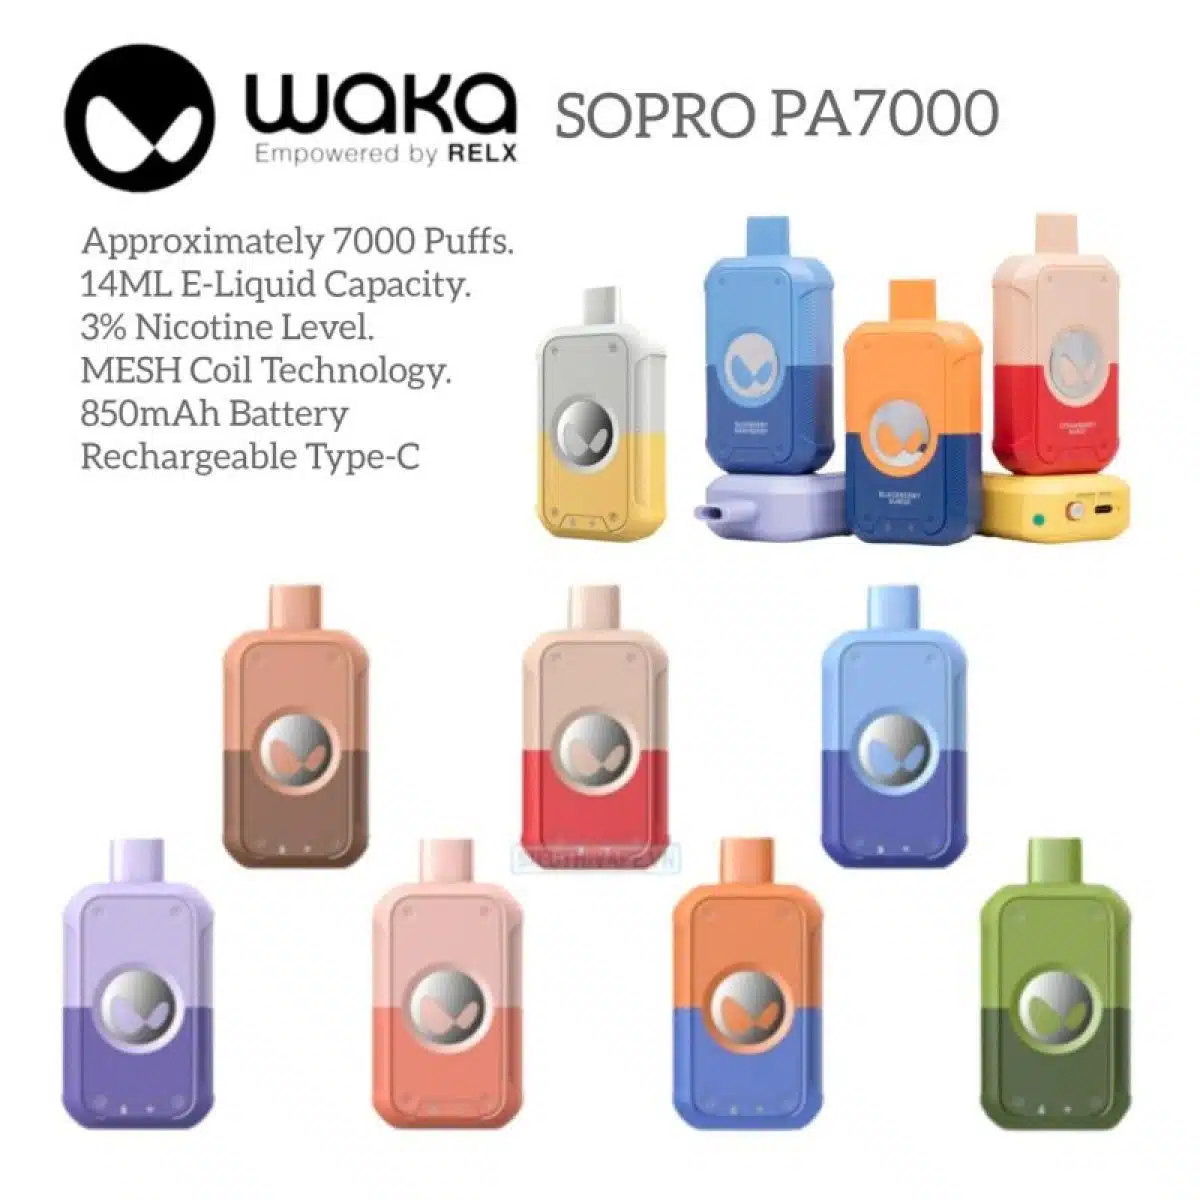 WAKA SoPro PA7000